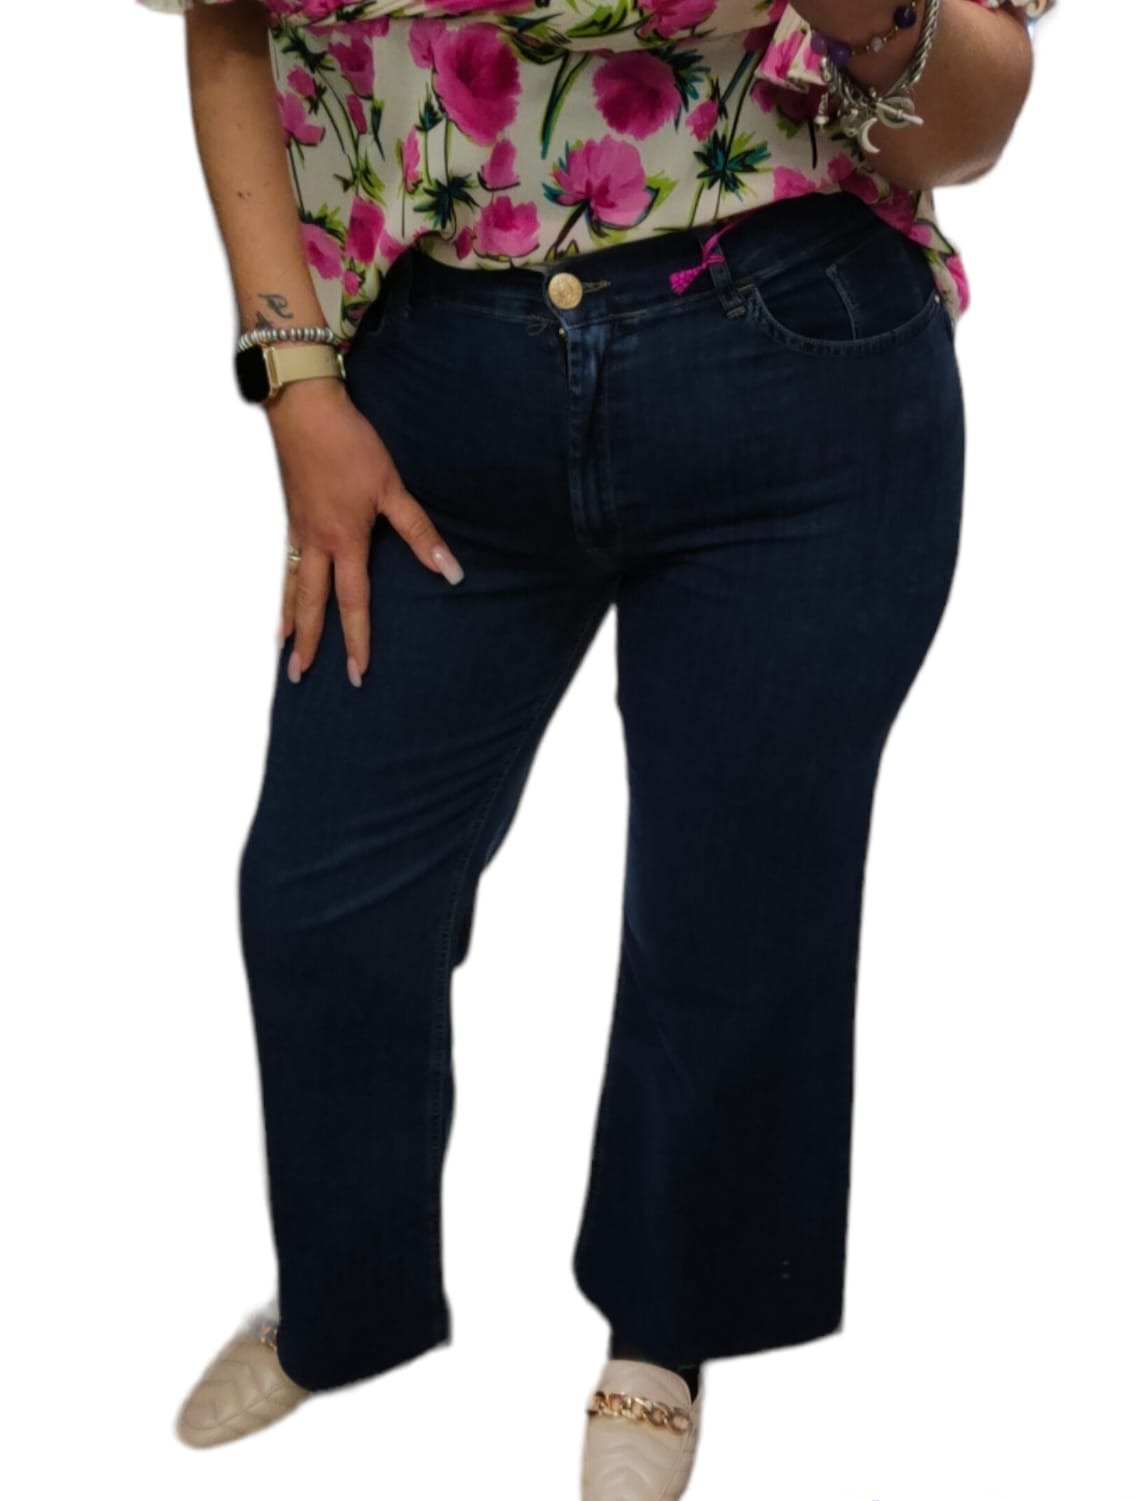 Jeans Donna IBER Modello Epril Cinque Tasche a Zampa con Orlo Sfrangiato